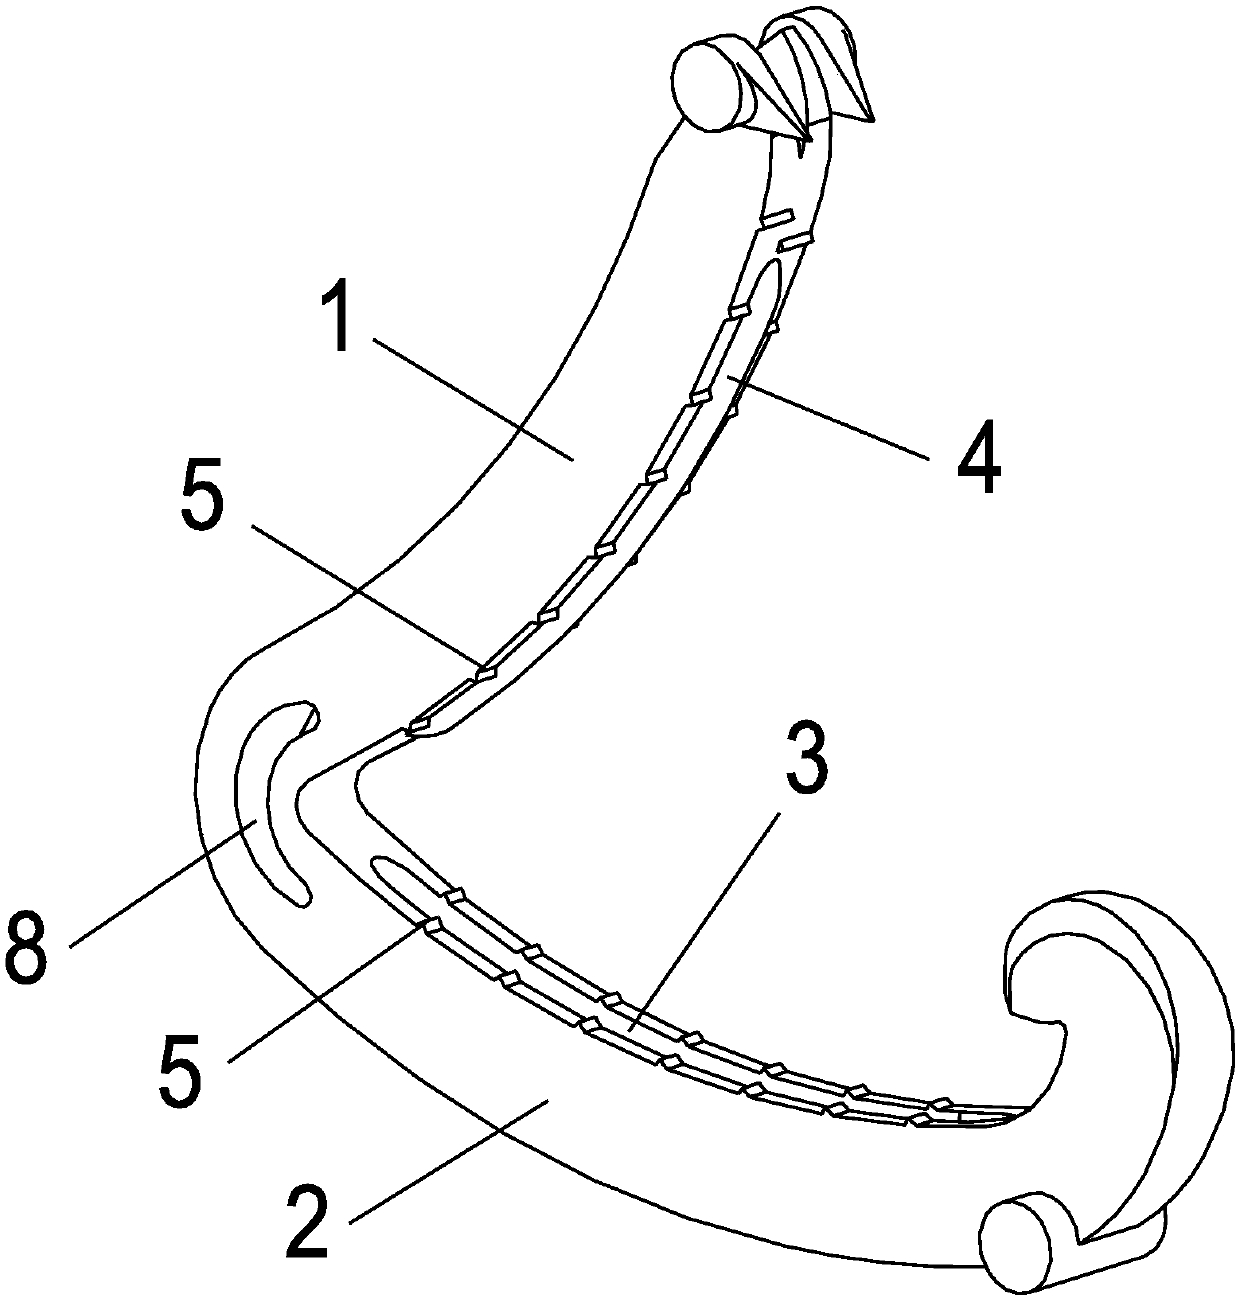 Separating-preventing ligating clip